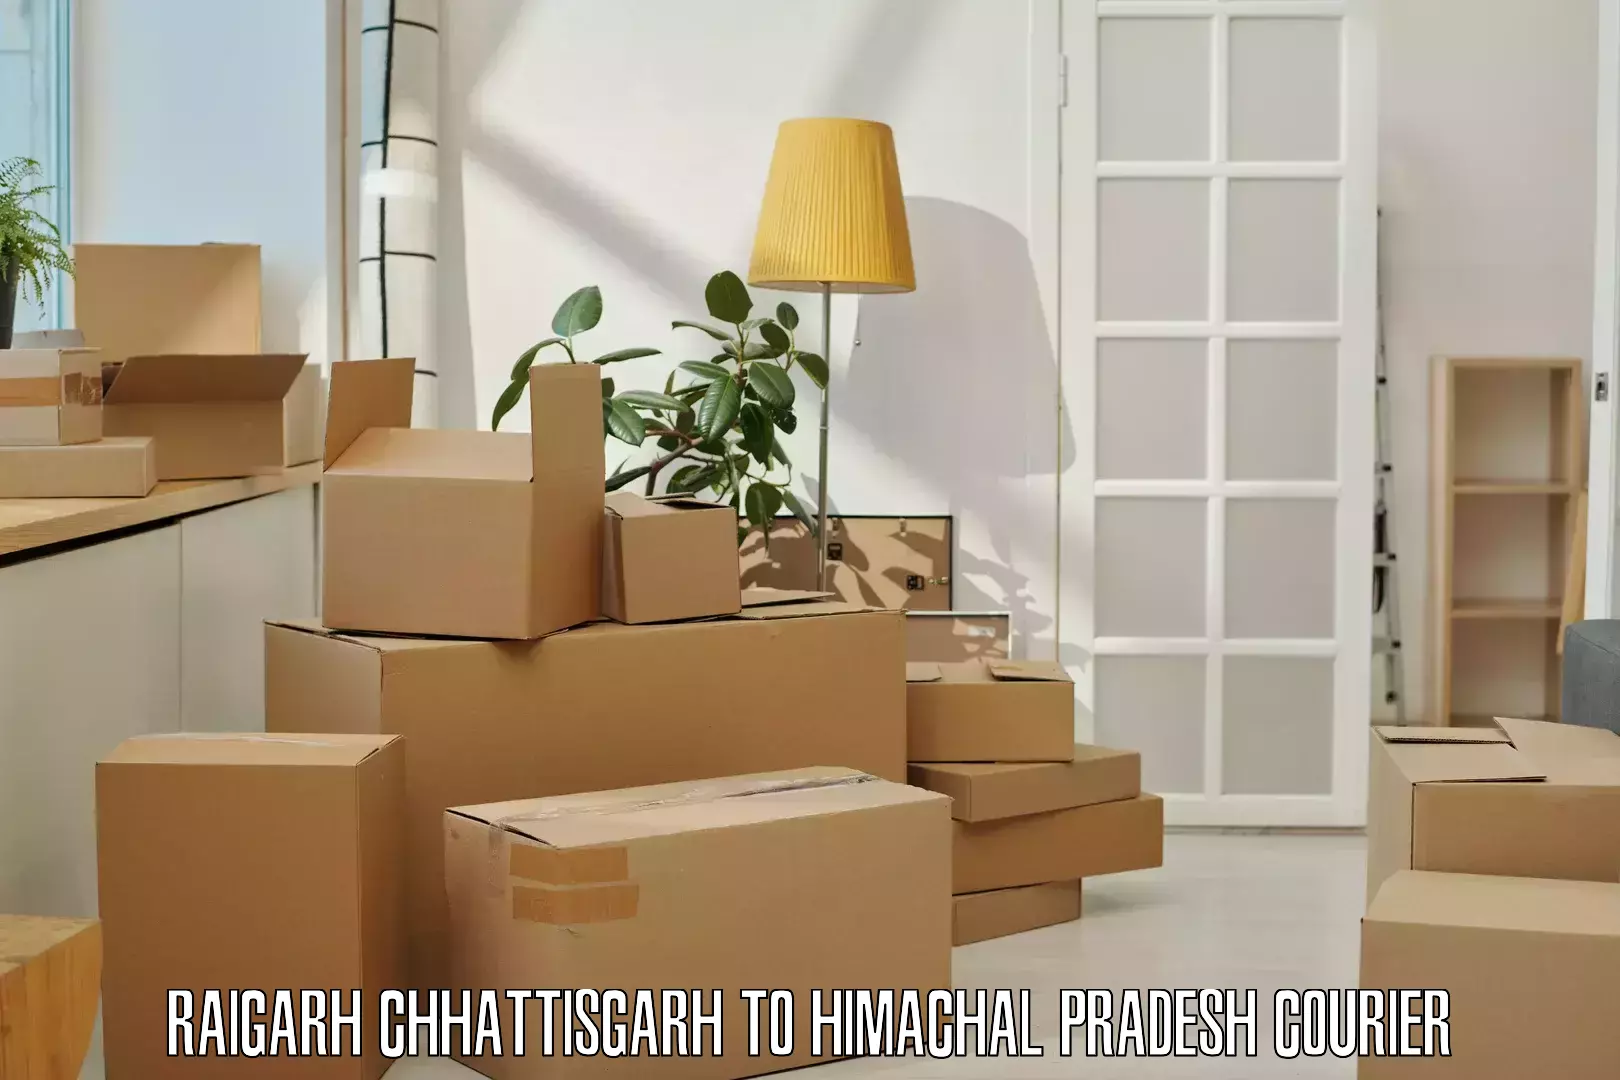 Next-generation courier services Raigarh Chhattisgarh to Himachal Pradesh